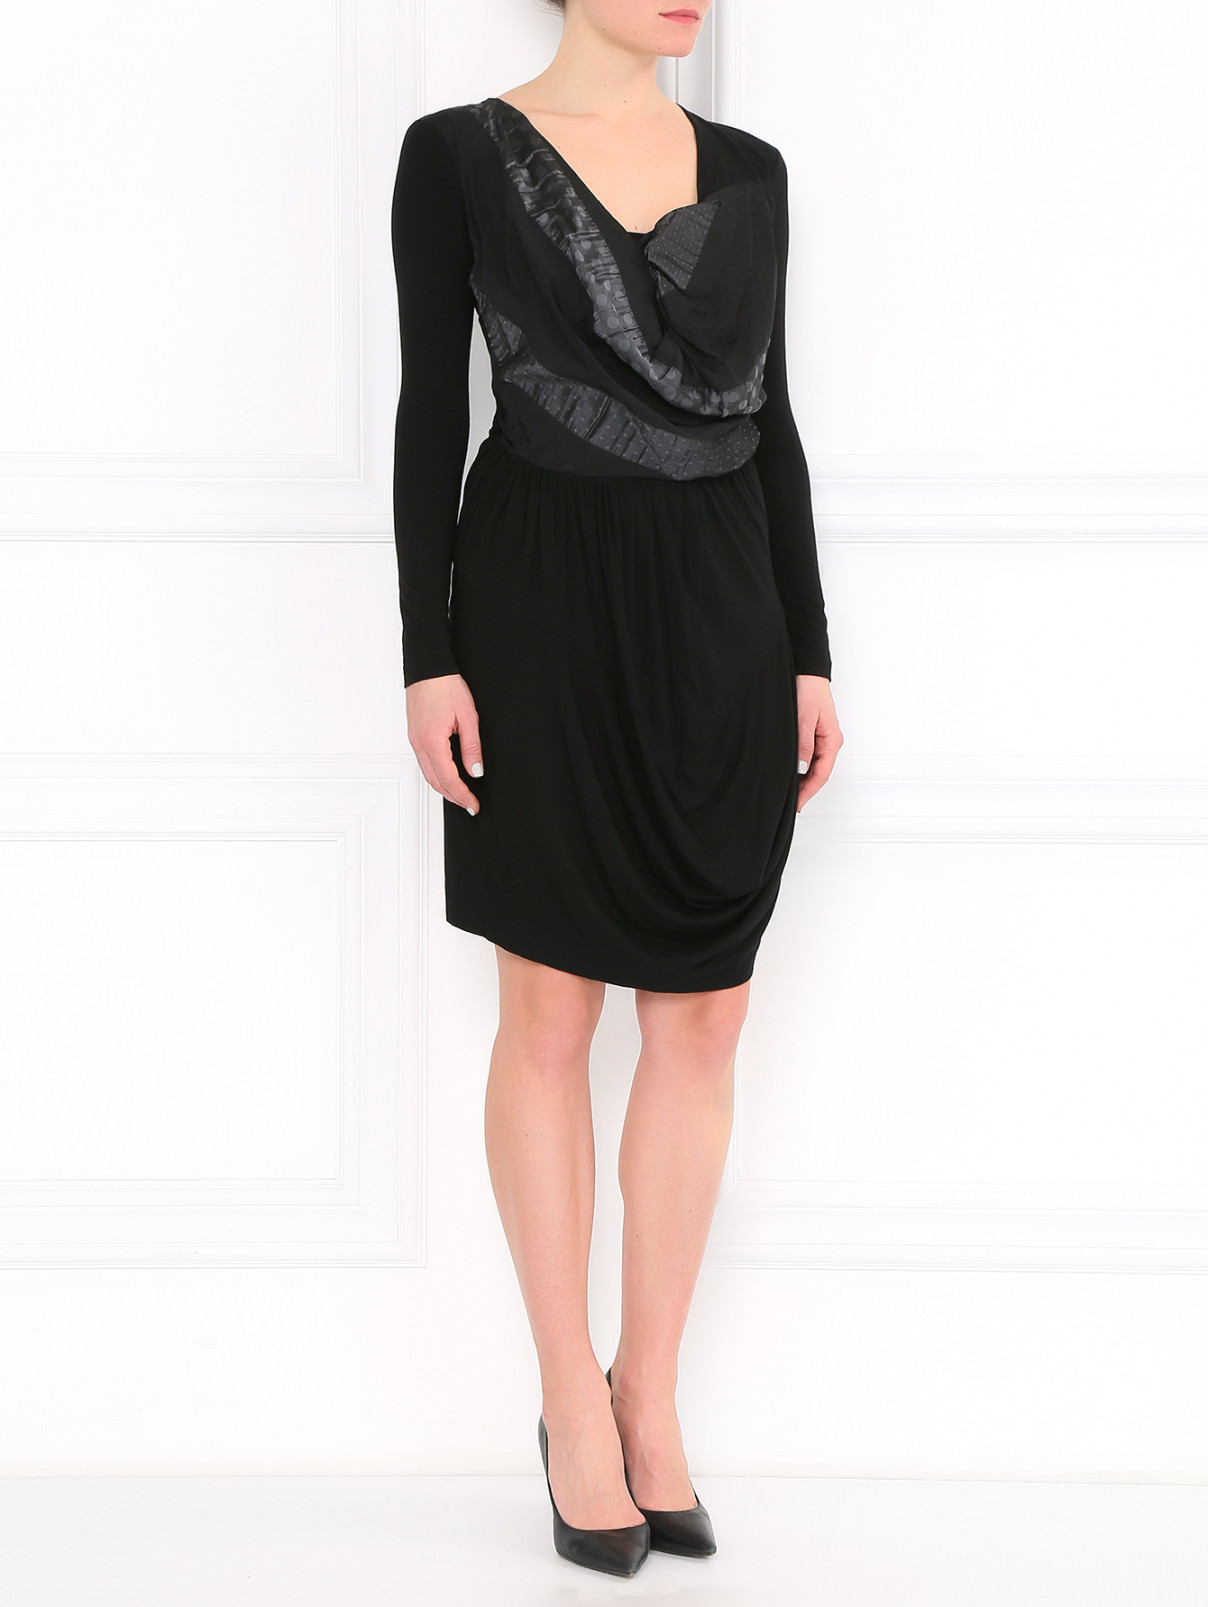 Платье асимметричного кроя с контрастной вставкой Isola Marras  –  Модель Общий вид  – Цвет:  Черный